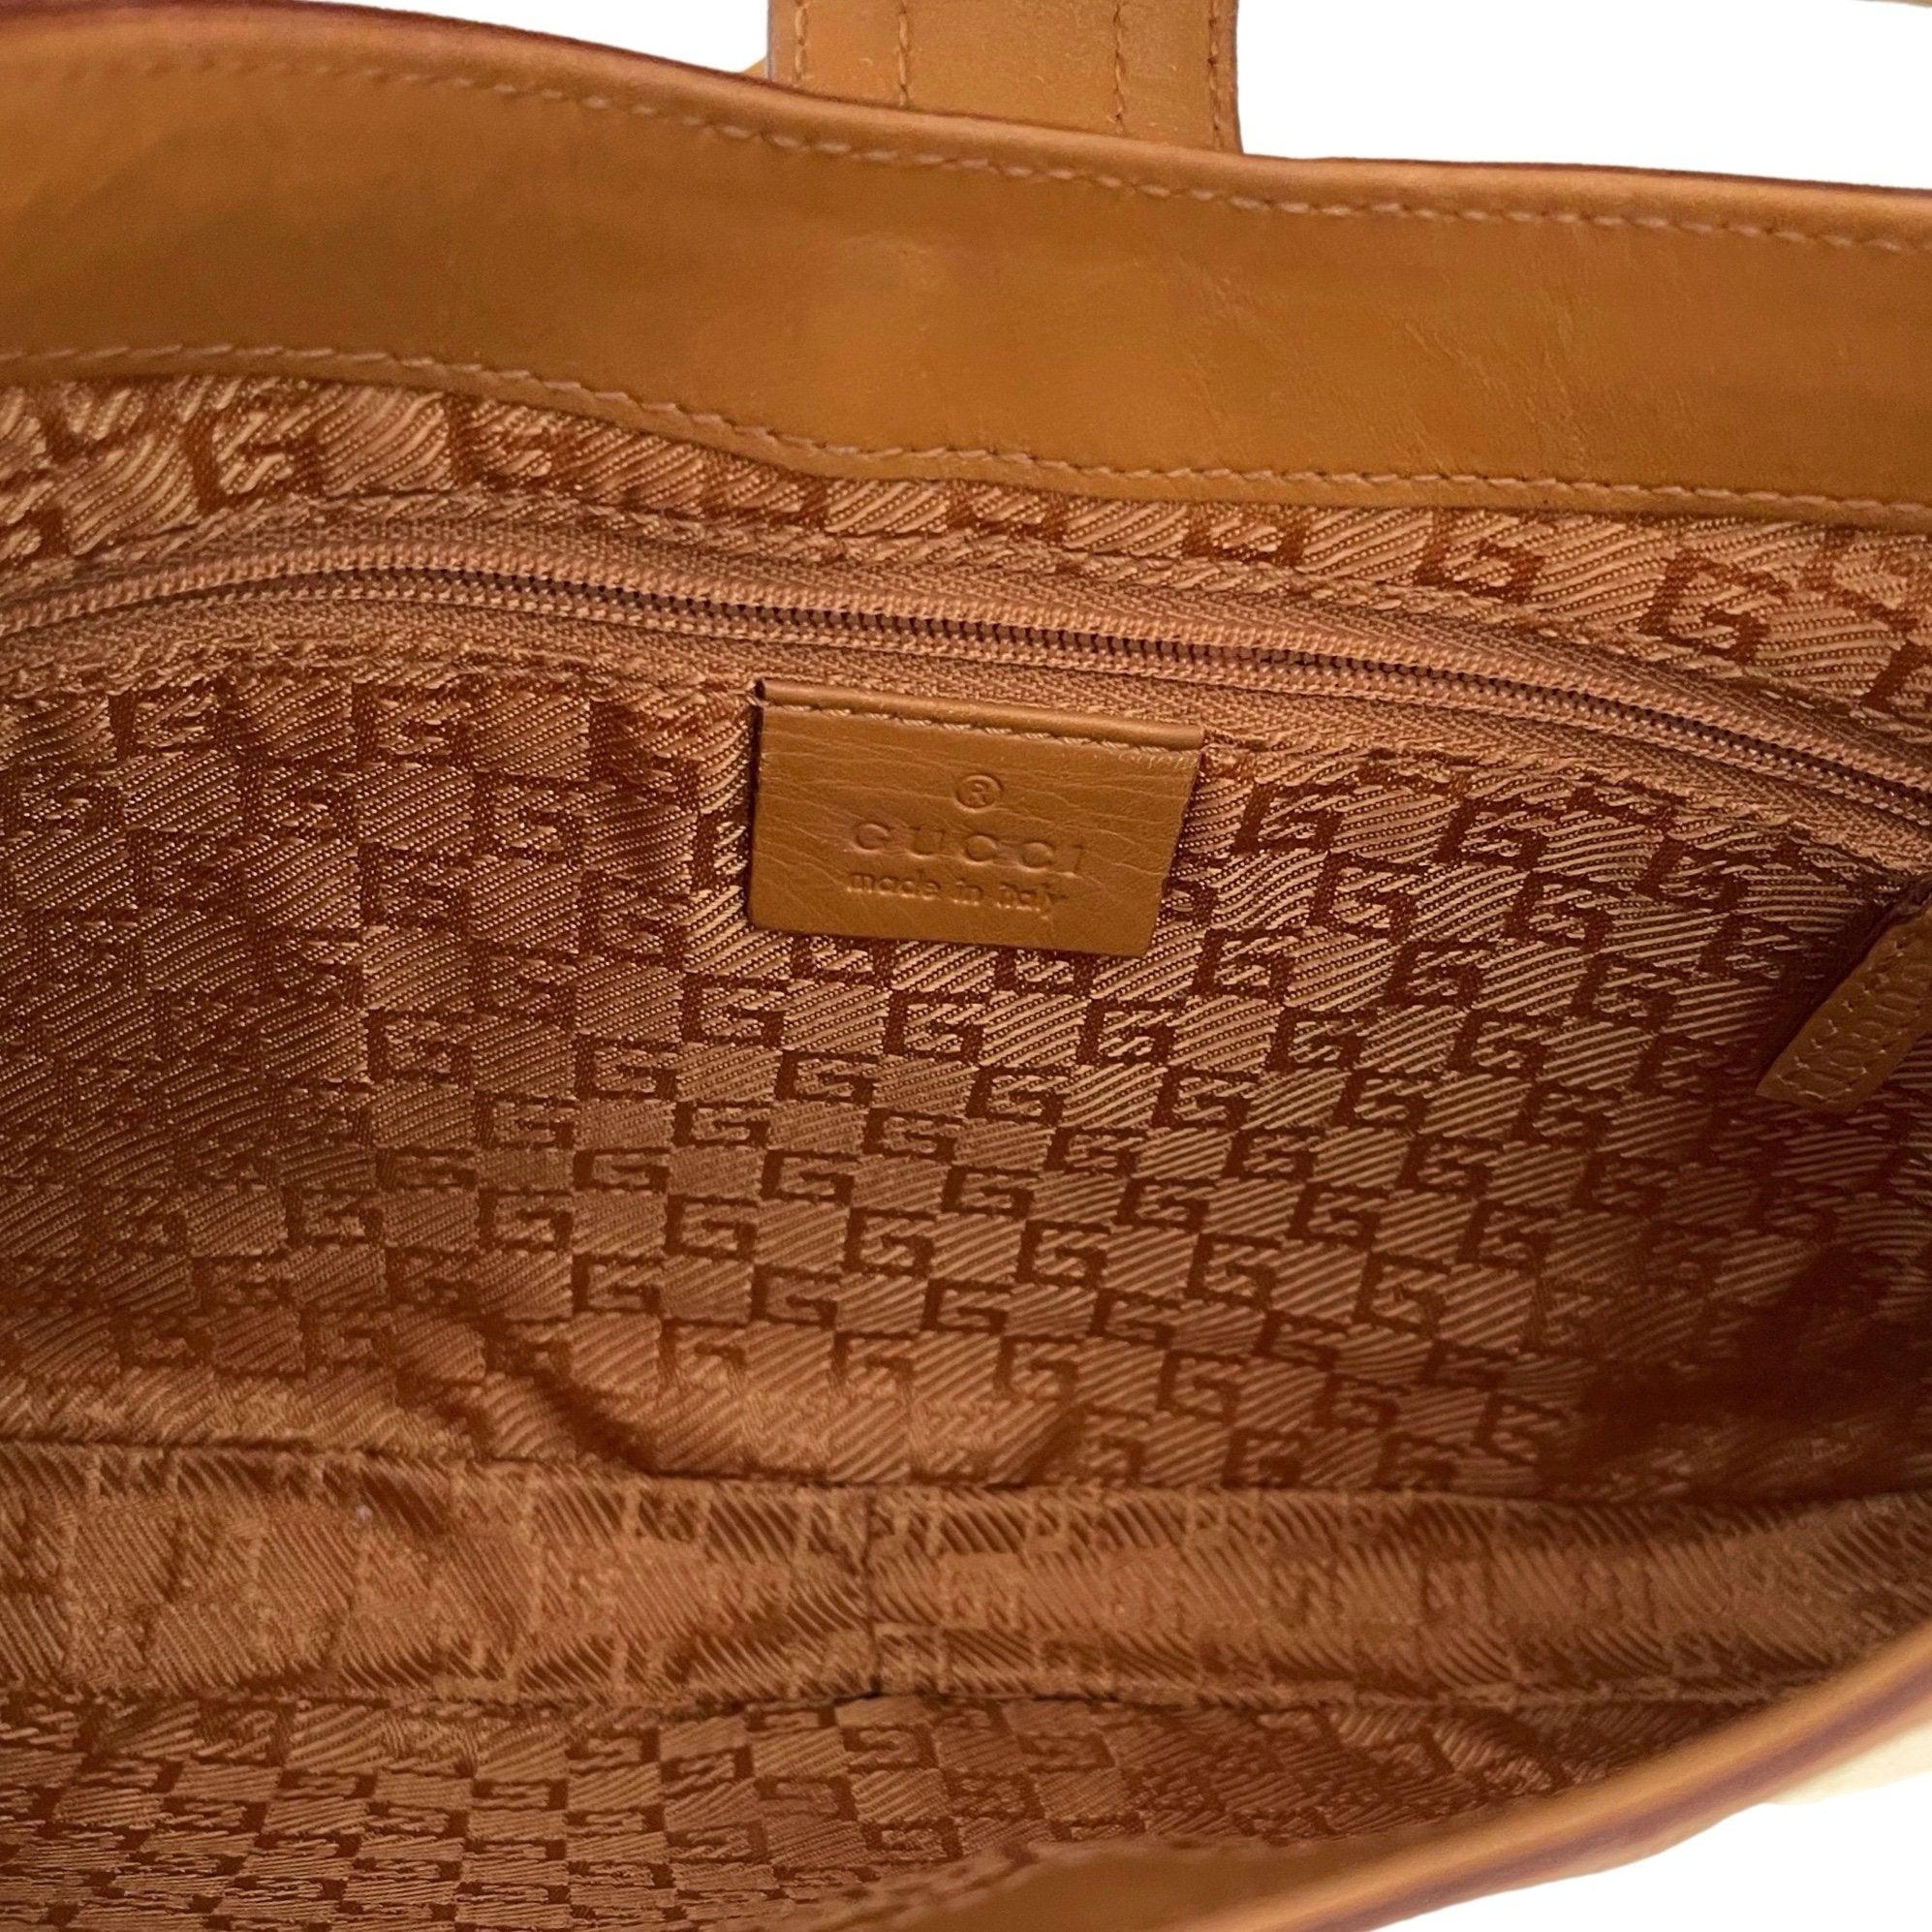 Gucci Beige Logo Shoulder Bag - Handbags